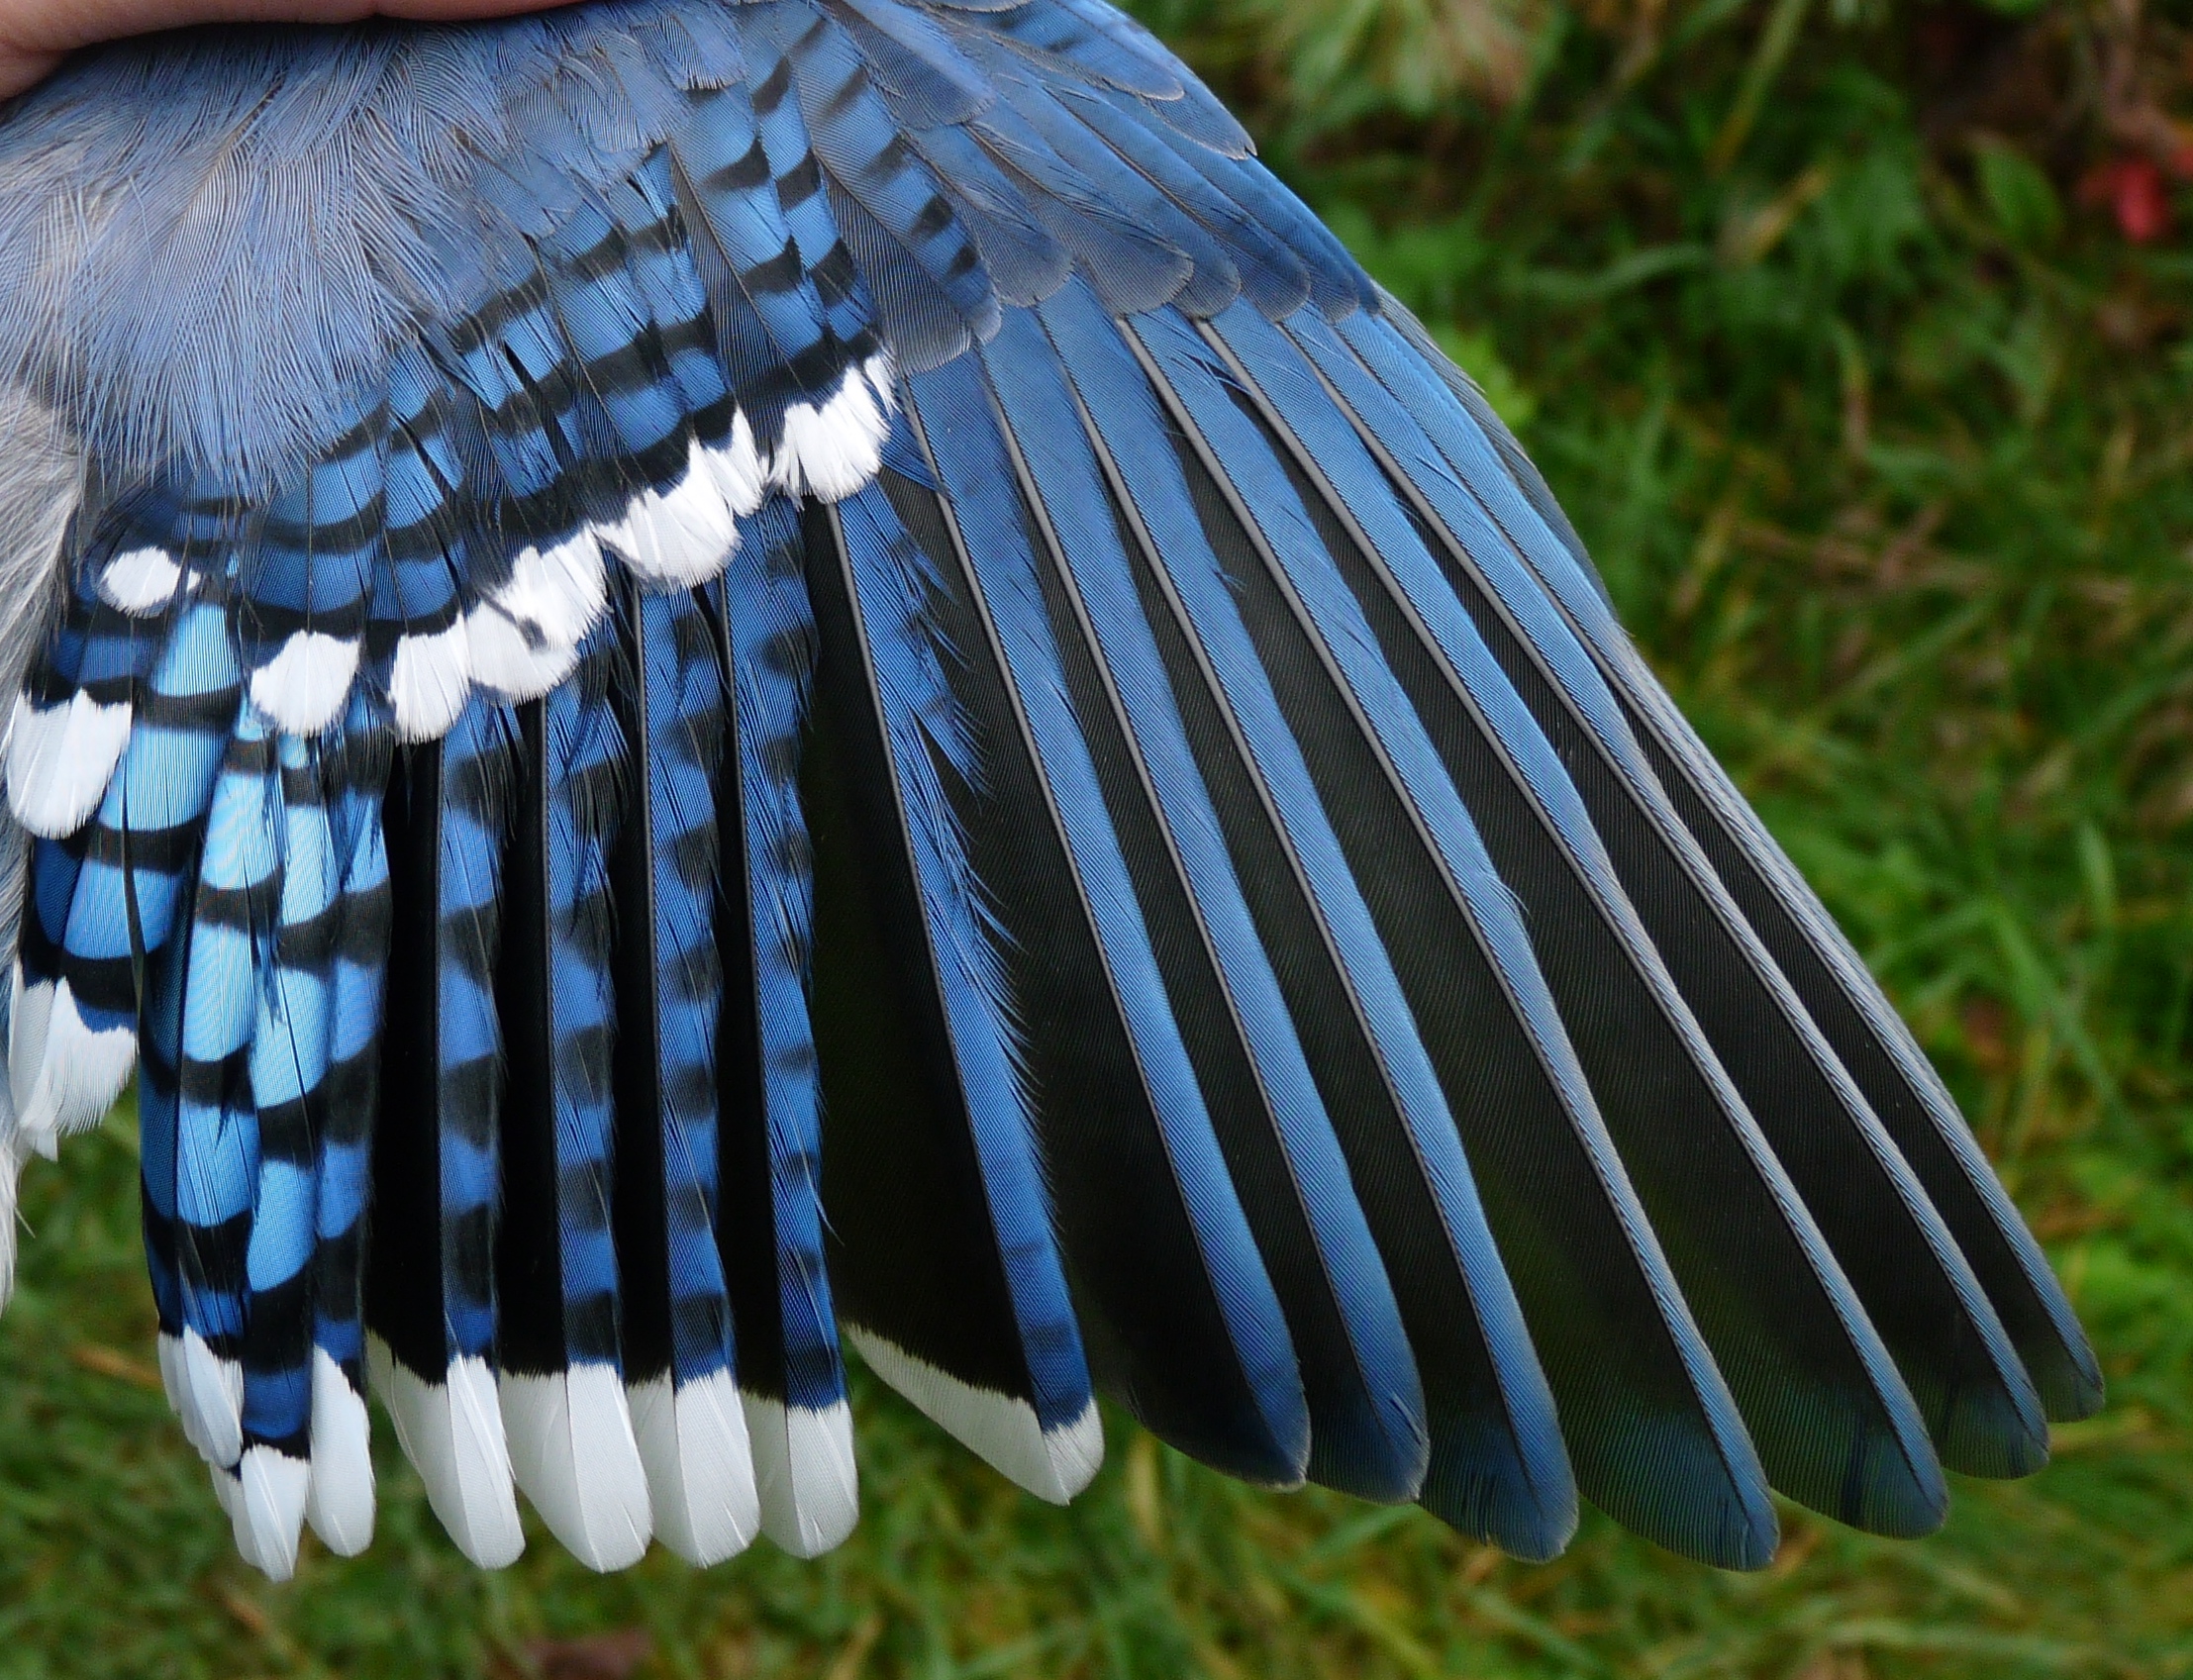 Blue Jay Wings